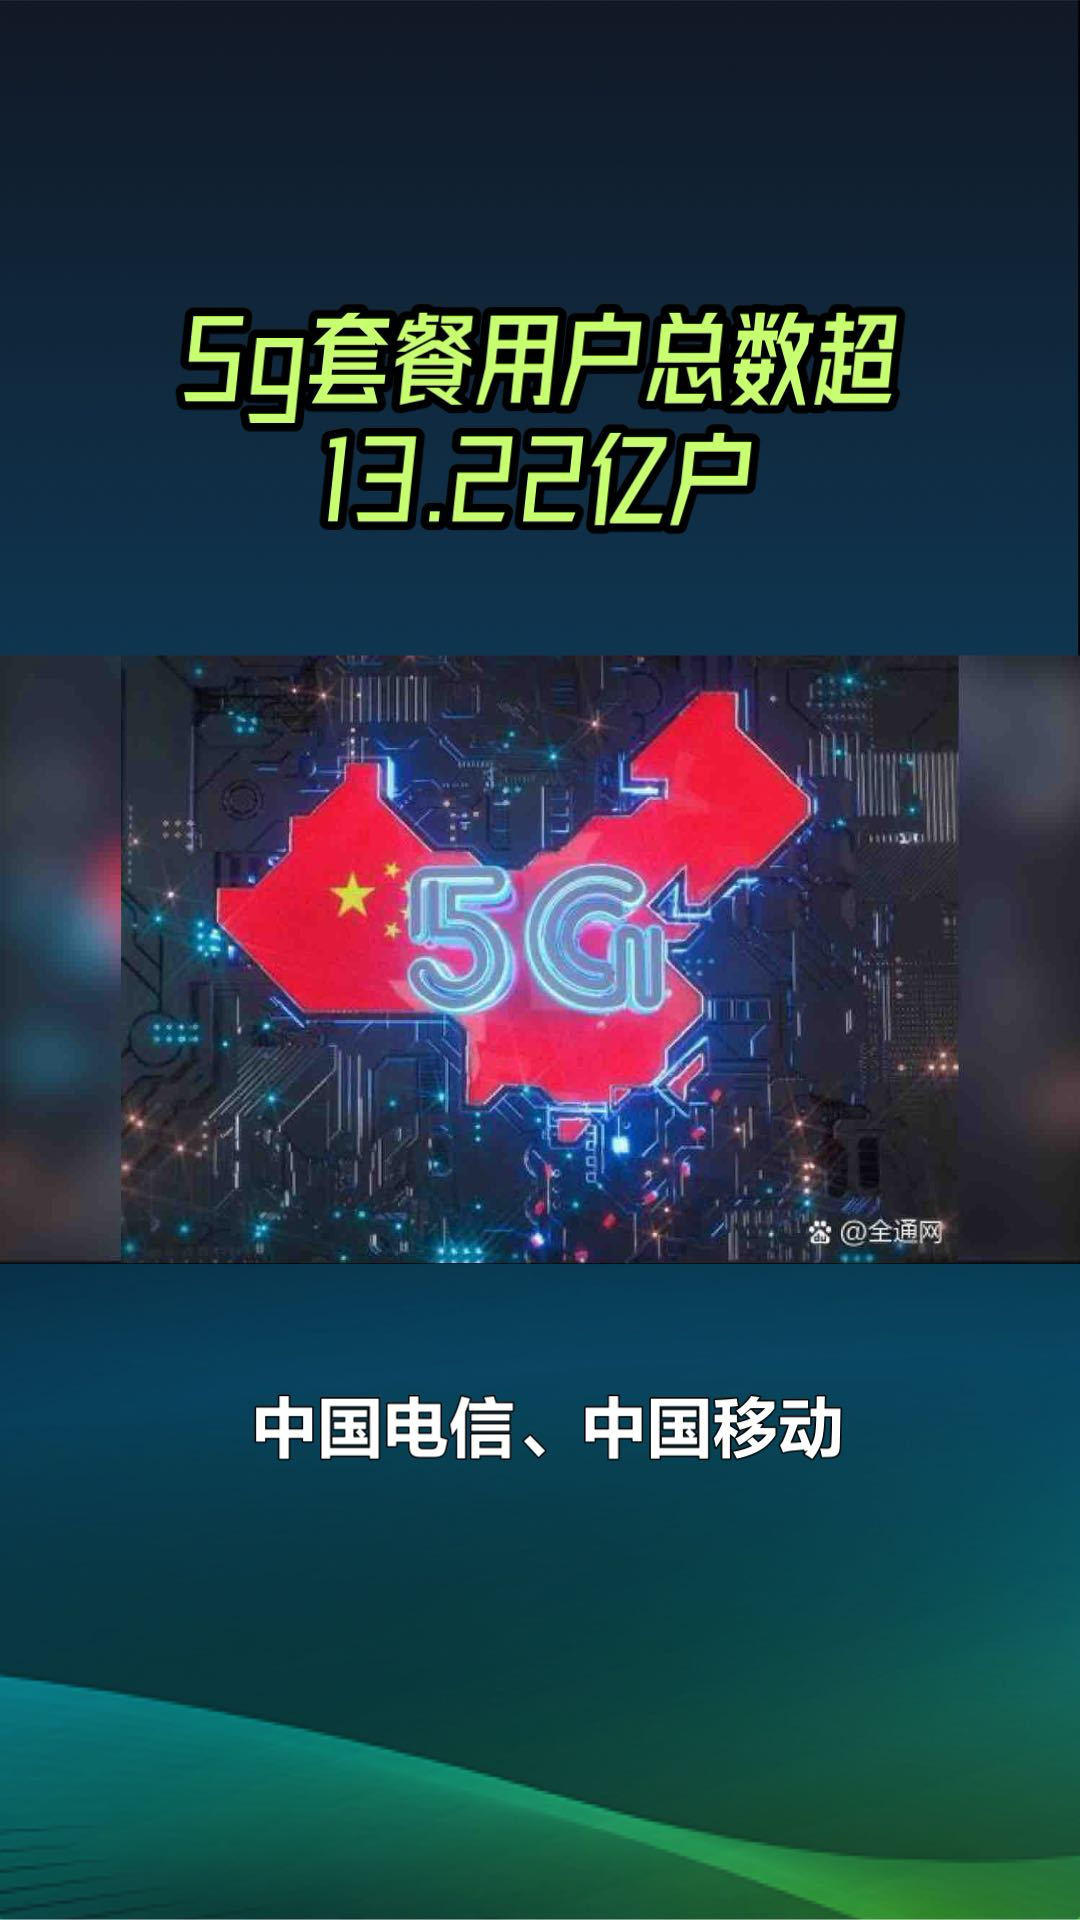 5g网络覆盖持续扩大,中国引领全球通信市场